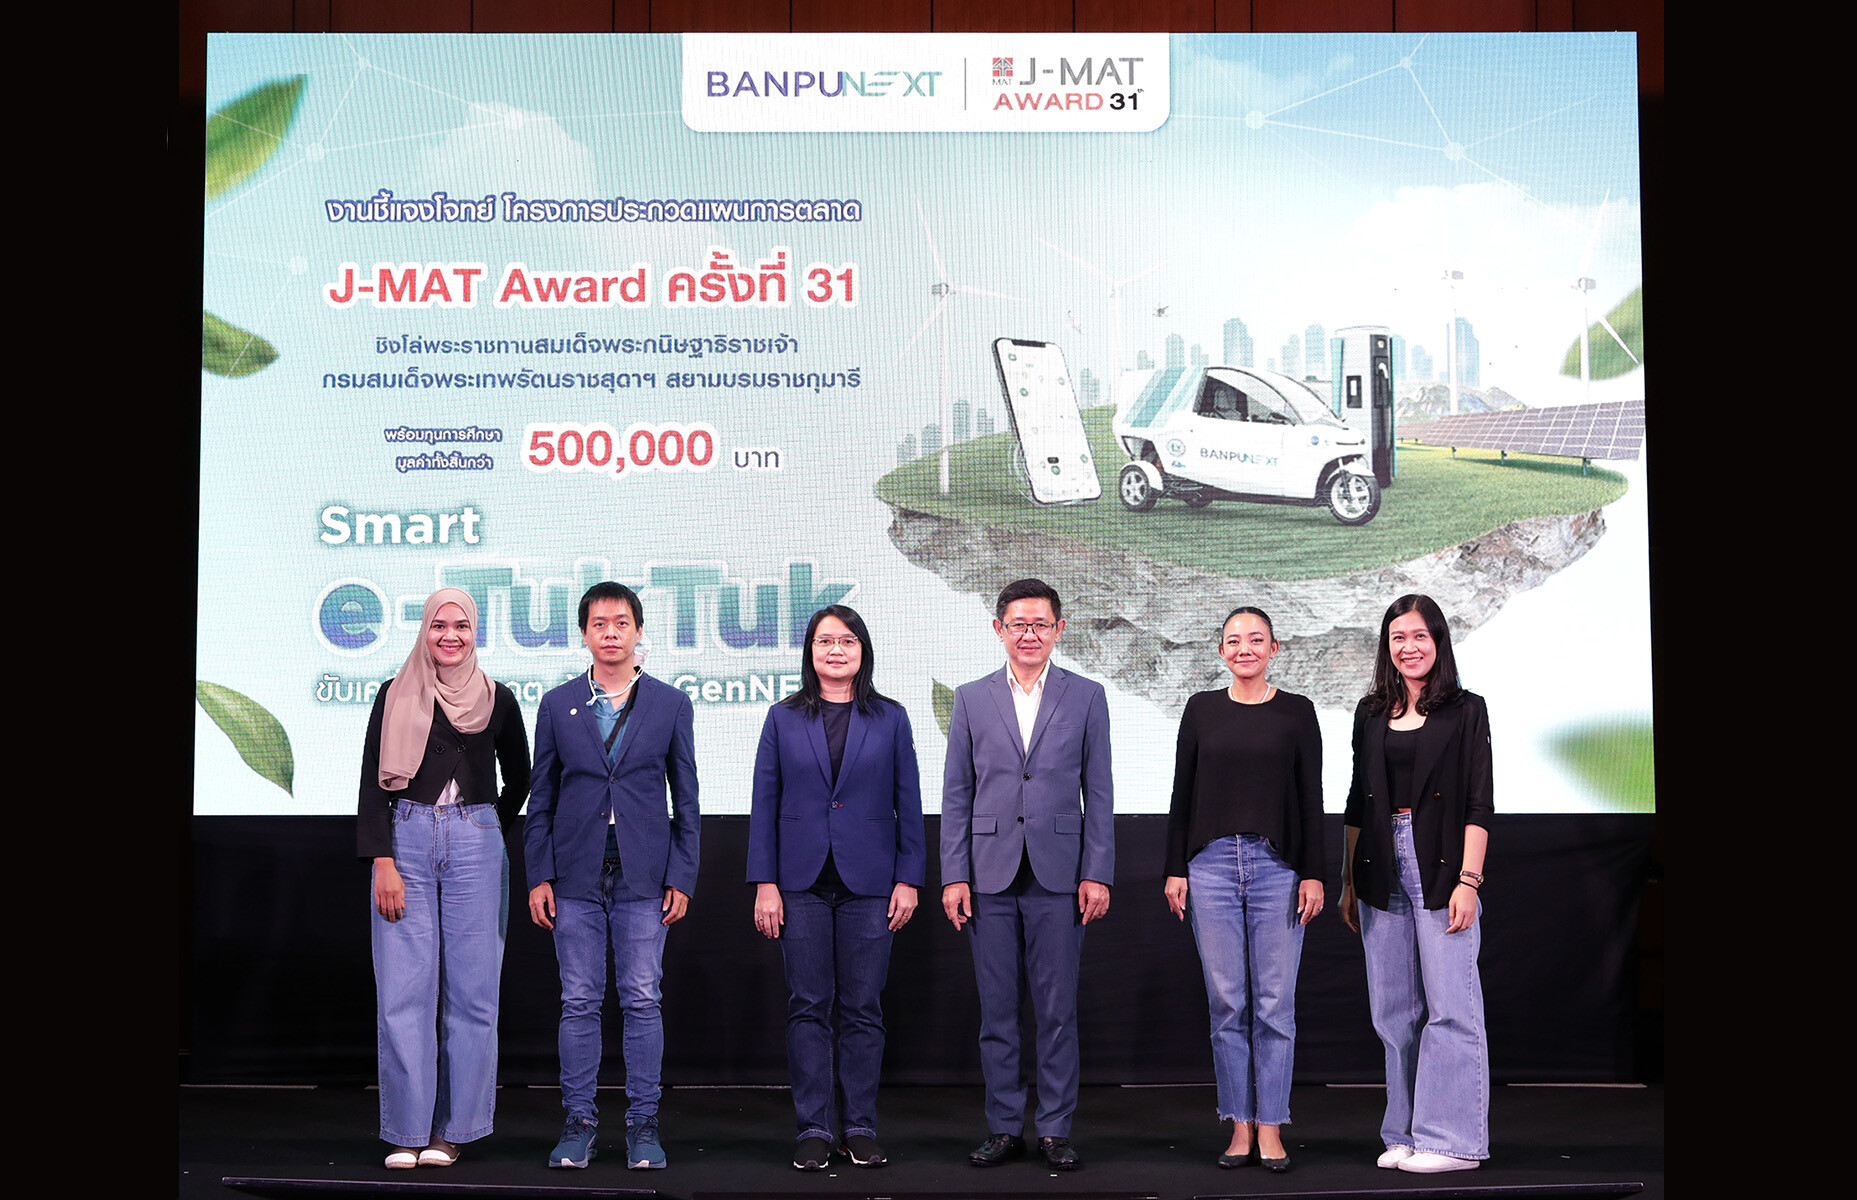 สมาคมการตลาดแห่งประเทศไทย ร่วมกับ บริษัท บ้านปู เน็กซ์ จำกัด จัดพิธีเปิดโครงการประกวดแผนการตลาด J-MAT Award ครั้งที่ 31 พร้อมชี้แจงโจทย์